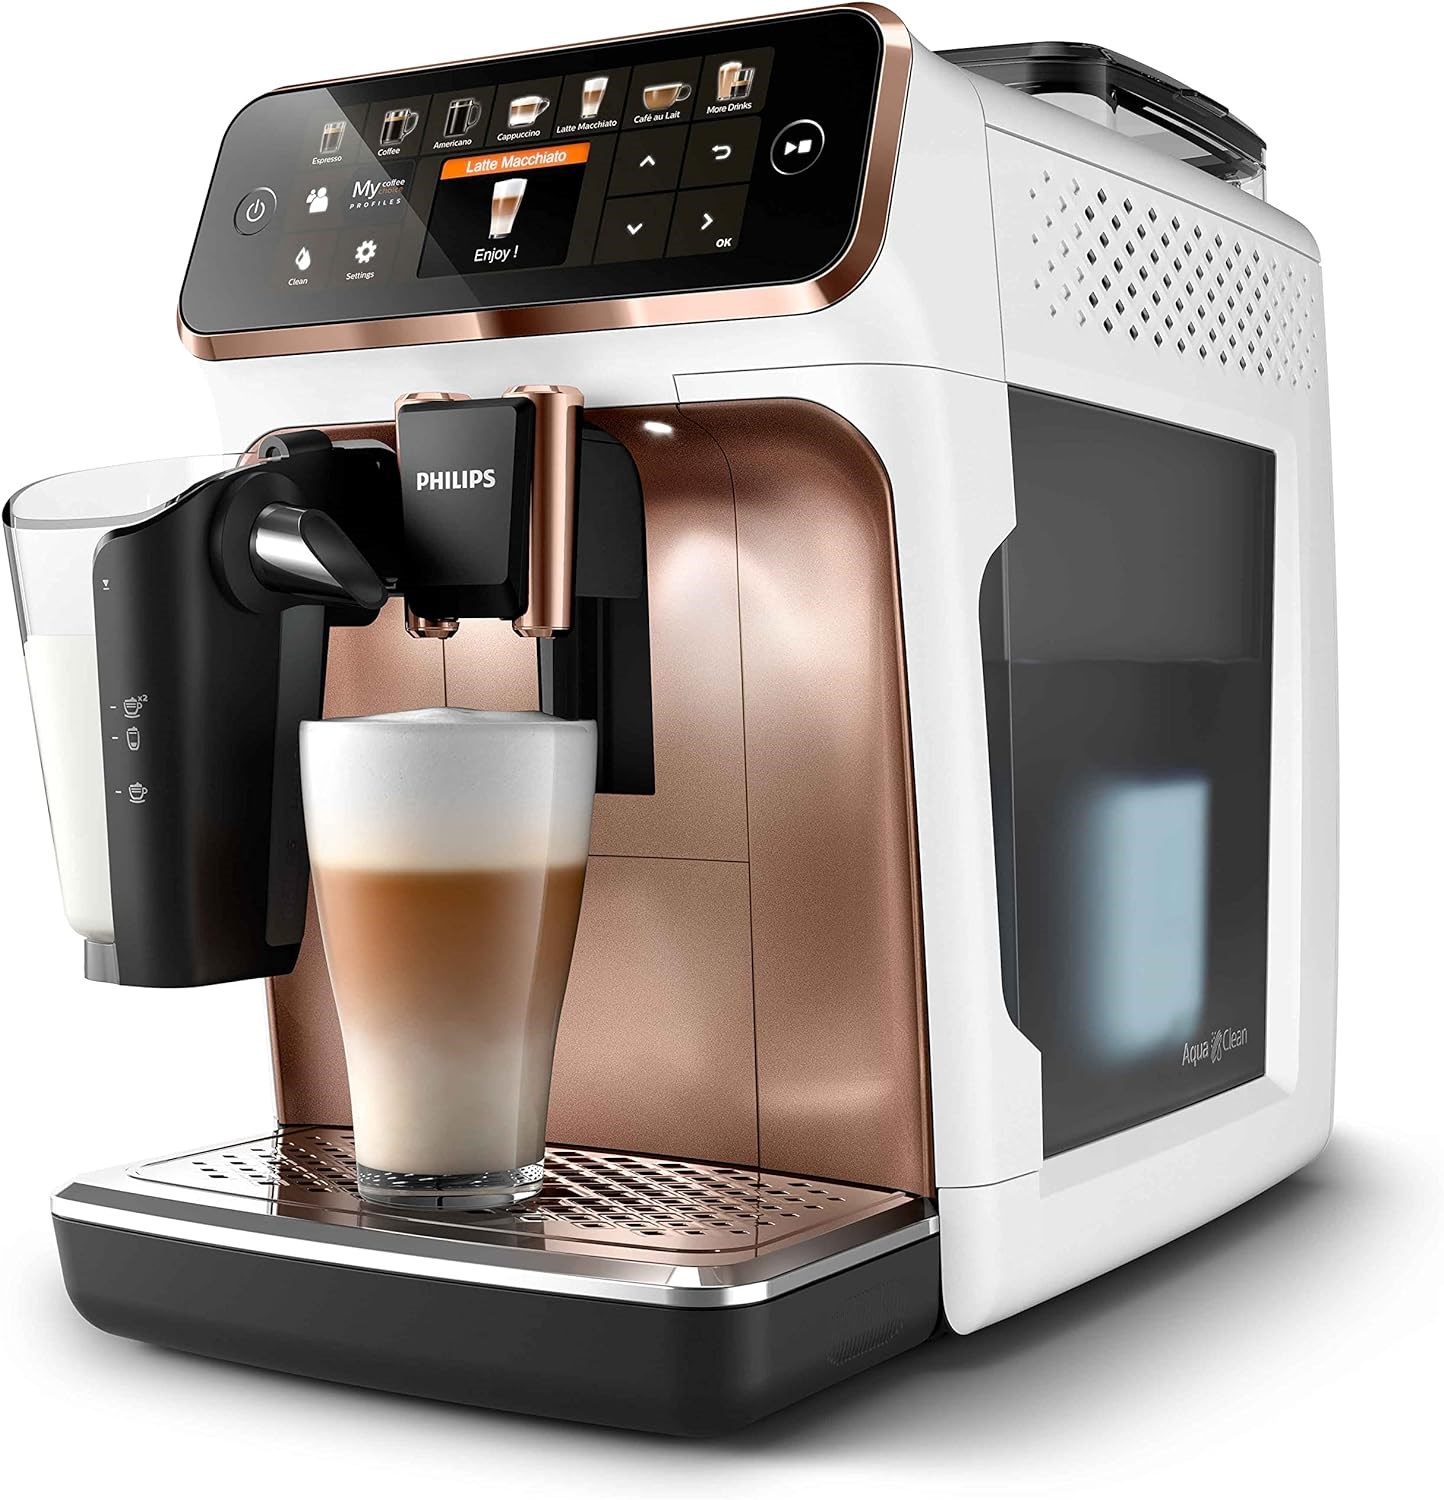 Amazon'da Philips Airfryer ve tam otomatik kahve makinesi indirim